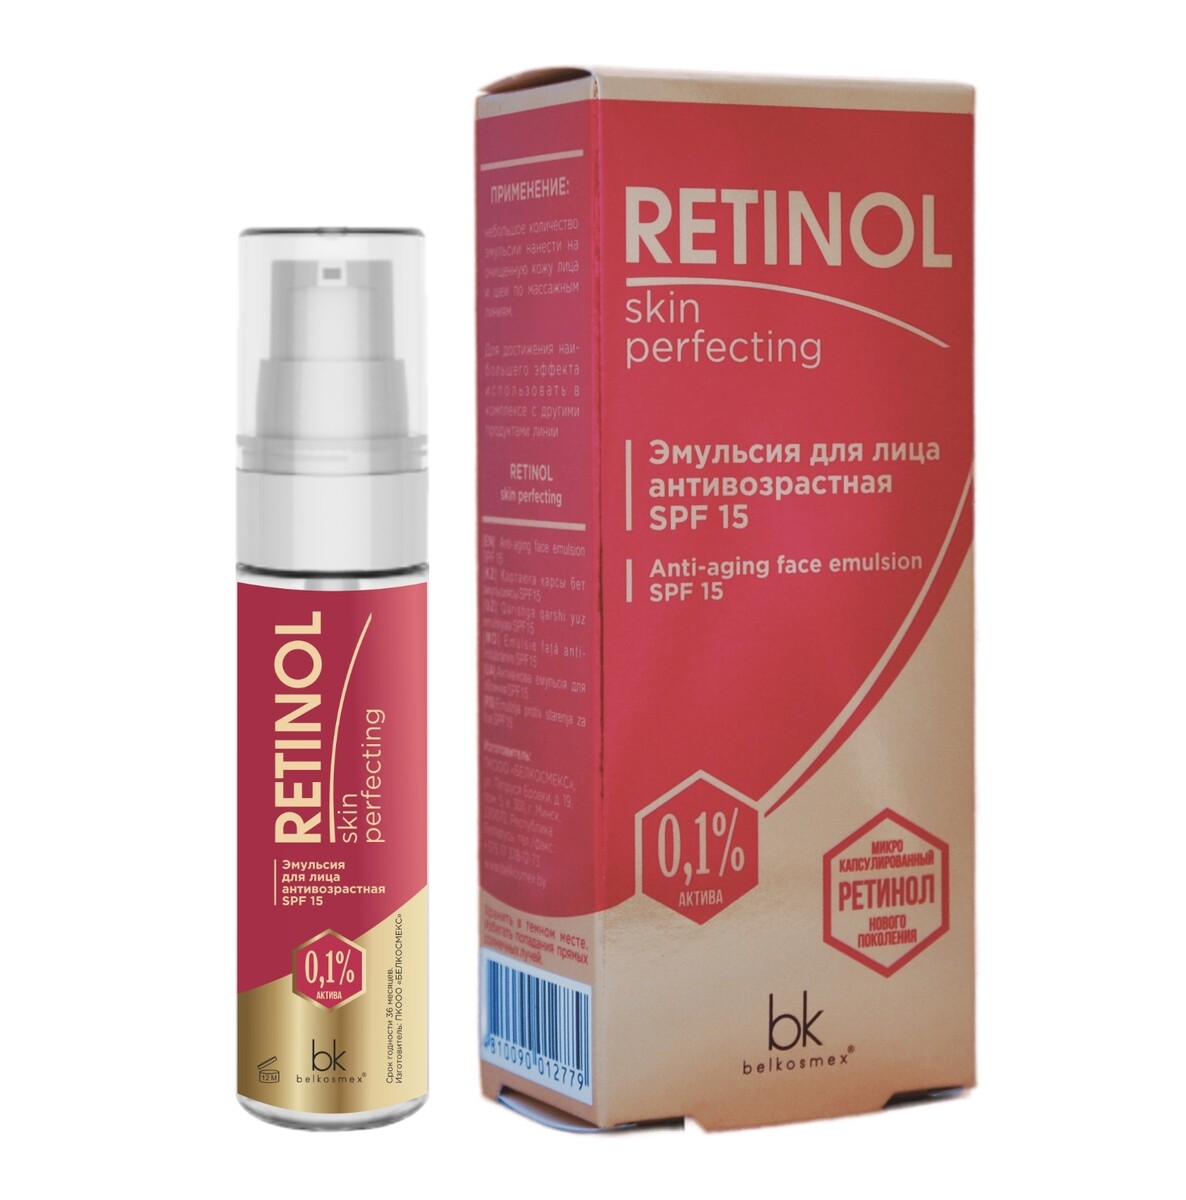 Retinol skin perfecting эмульсия для лица антивозрастная spf 15 30г эспумизан л эмульсия 40мг мл 30мл